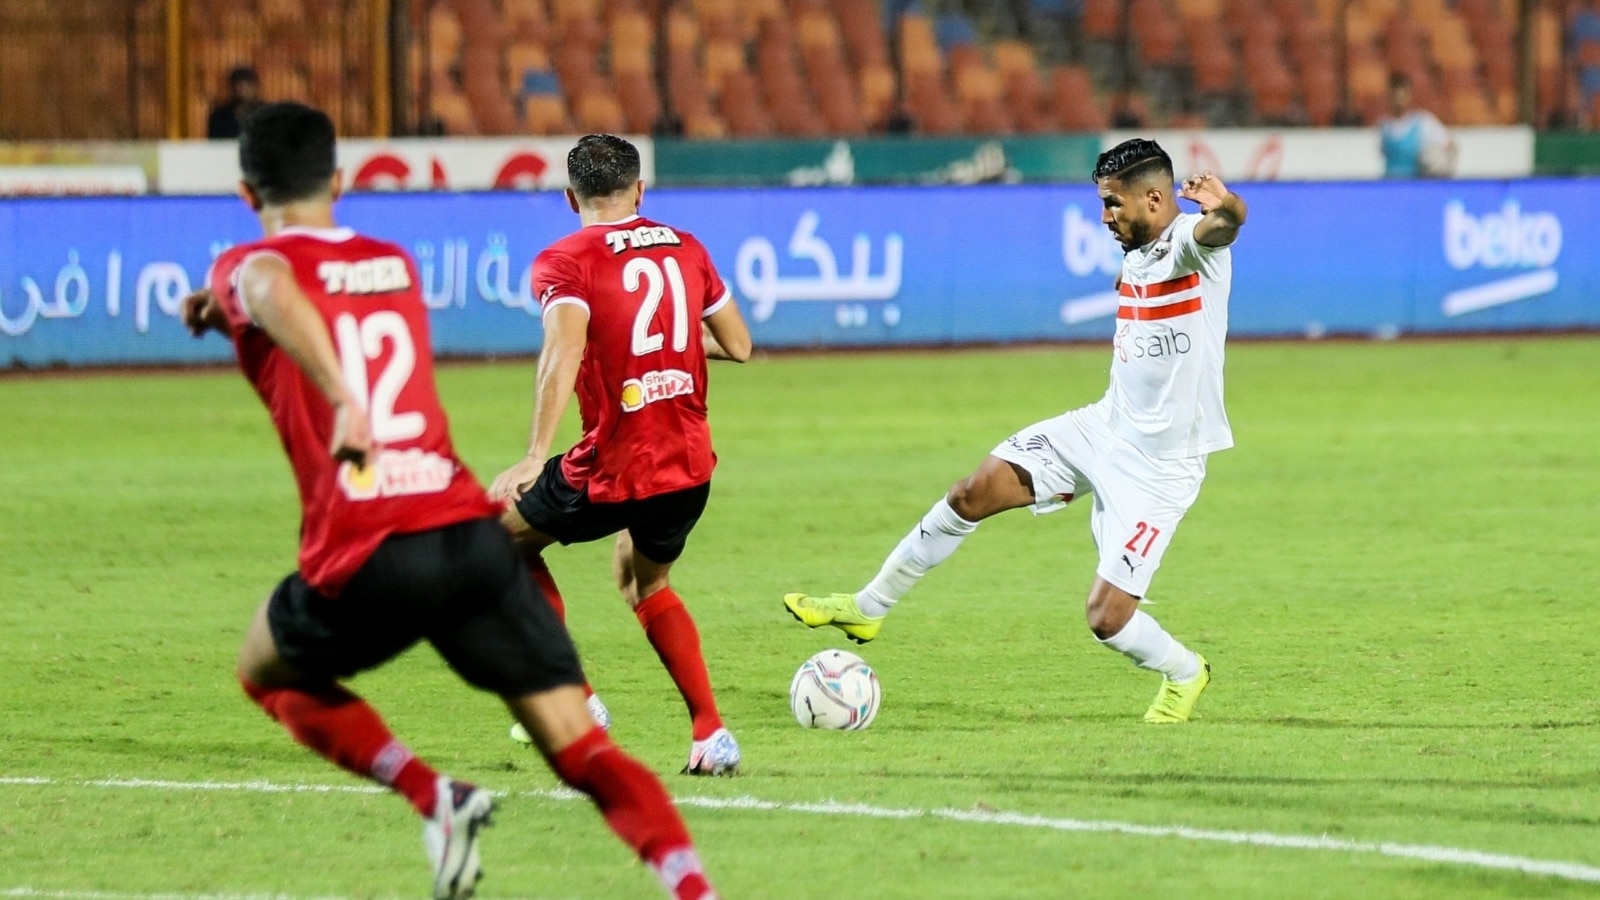 الدوري المصري الممتاز يعلن عن بدء الجولة 21 من المباريات من اليوم